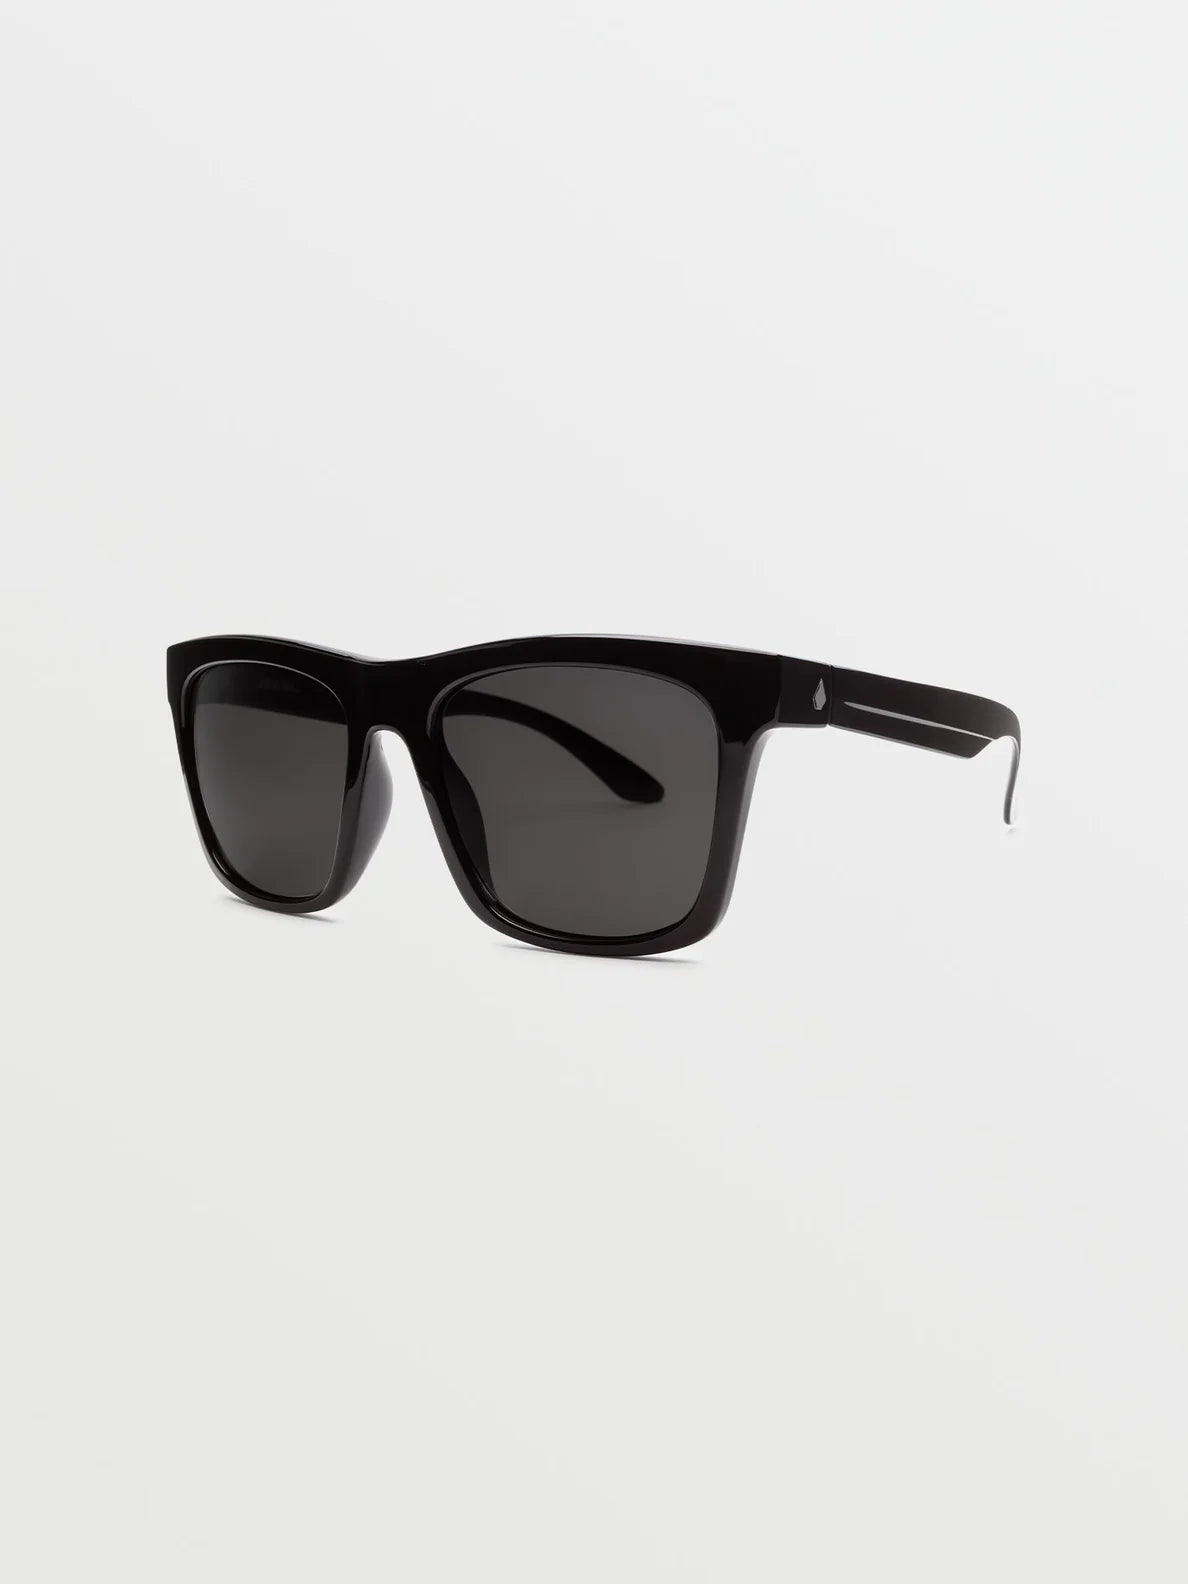 Volcom Jewel Gloss Schwarz/Graue Sonnenbrille | Meistverkaufte Produkte | Neue Produkte | Neueste Produkte | Sammlung_Zalando | Volcom-Shop | Volcom-Sonnenbrille | surfdevils.com